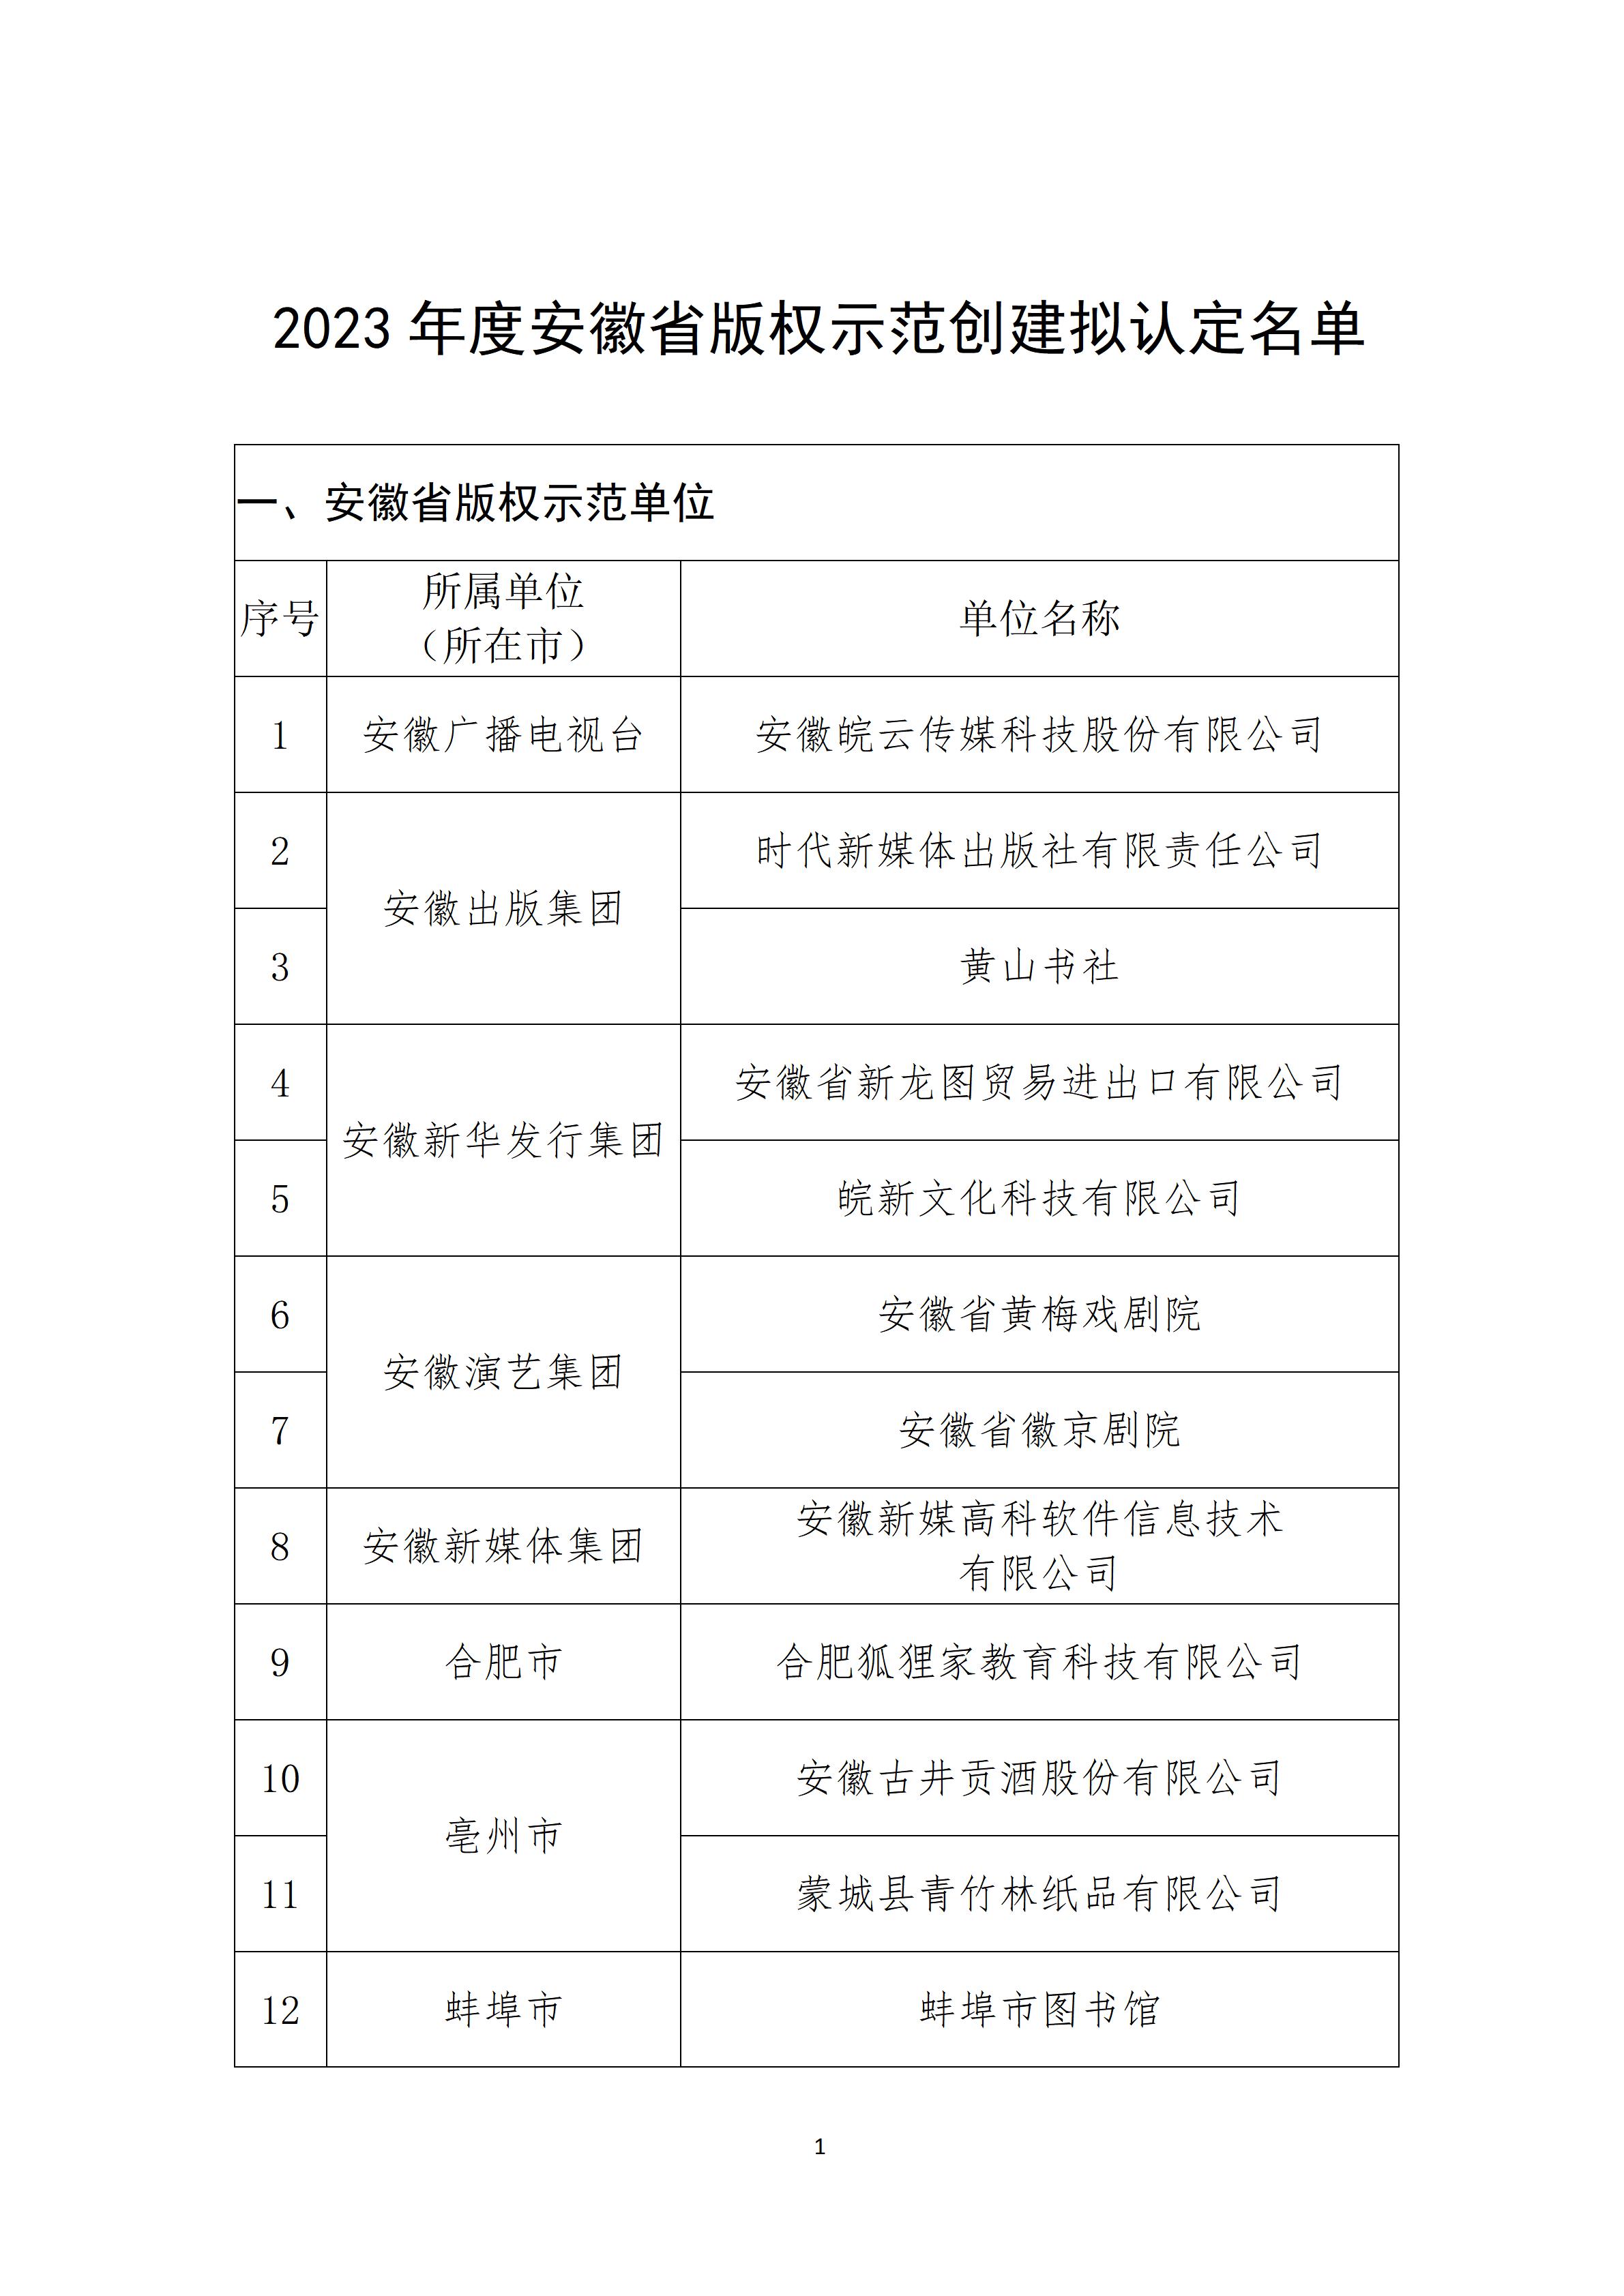 2023年度安徽省版权示范创建公示_02.jpg